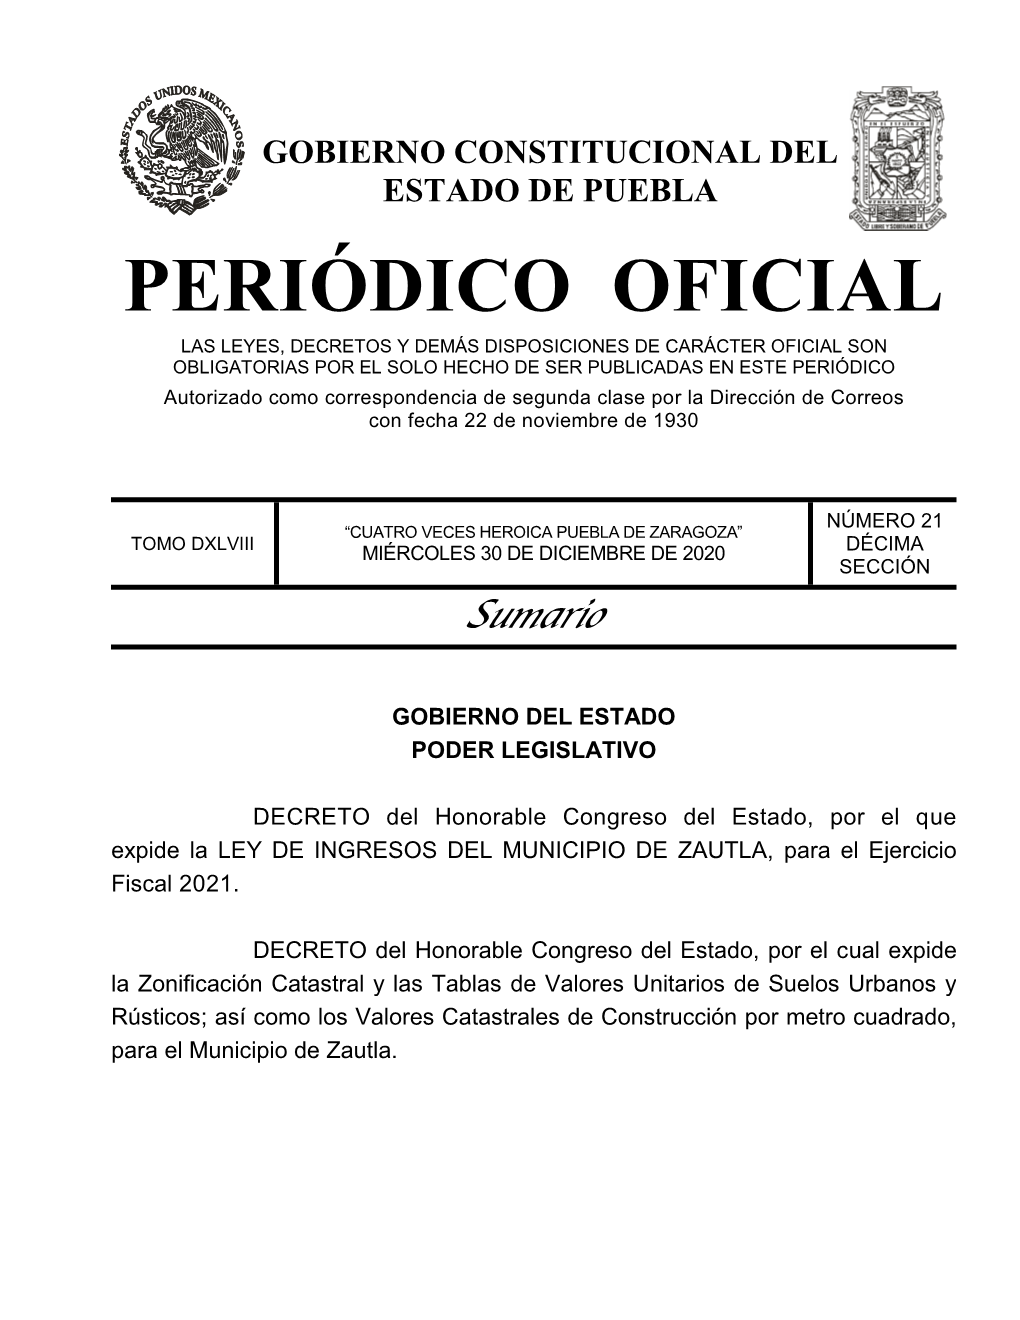 LEY DE INGRESOS DEL MUNICIPIO DE ZAUTLA, Para El Ejercicio Fiscal 2021